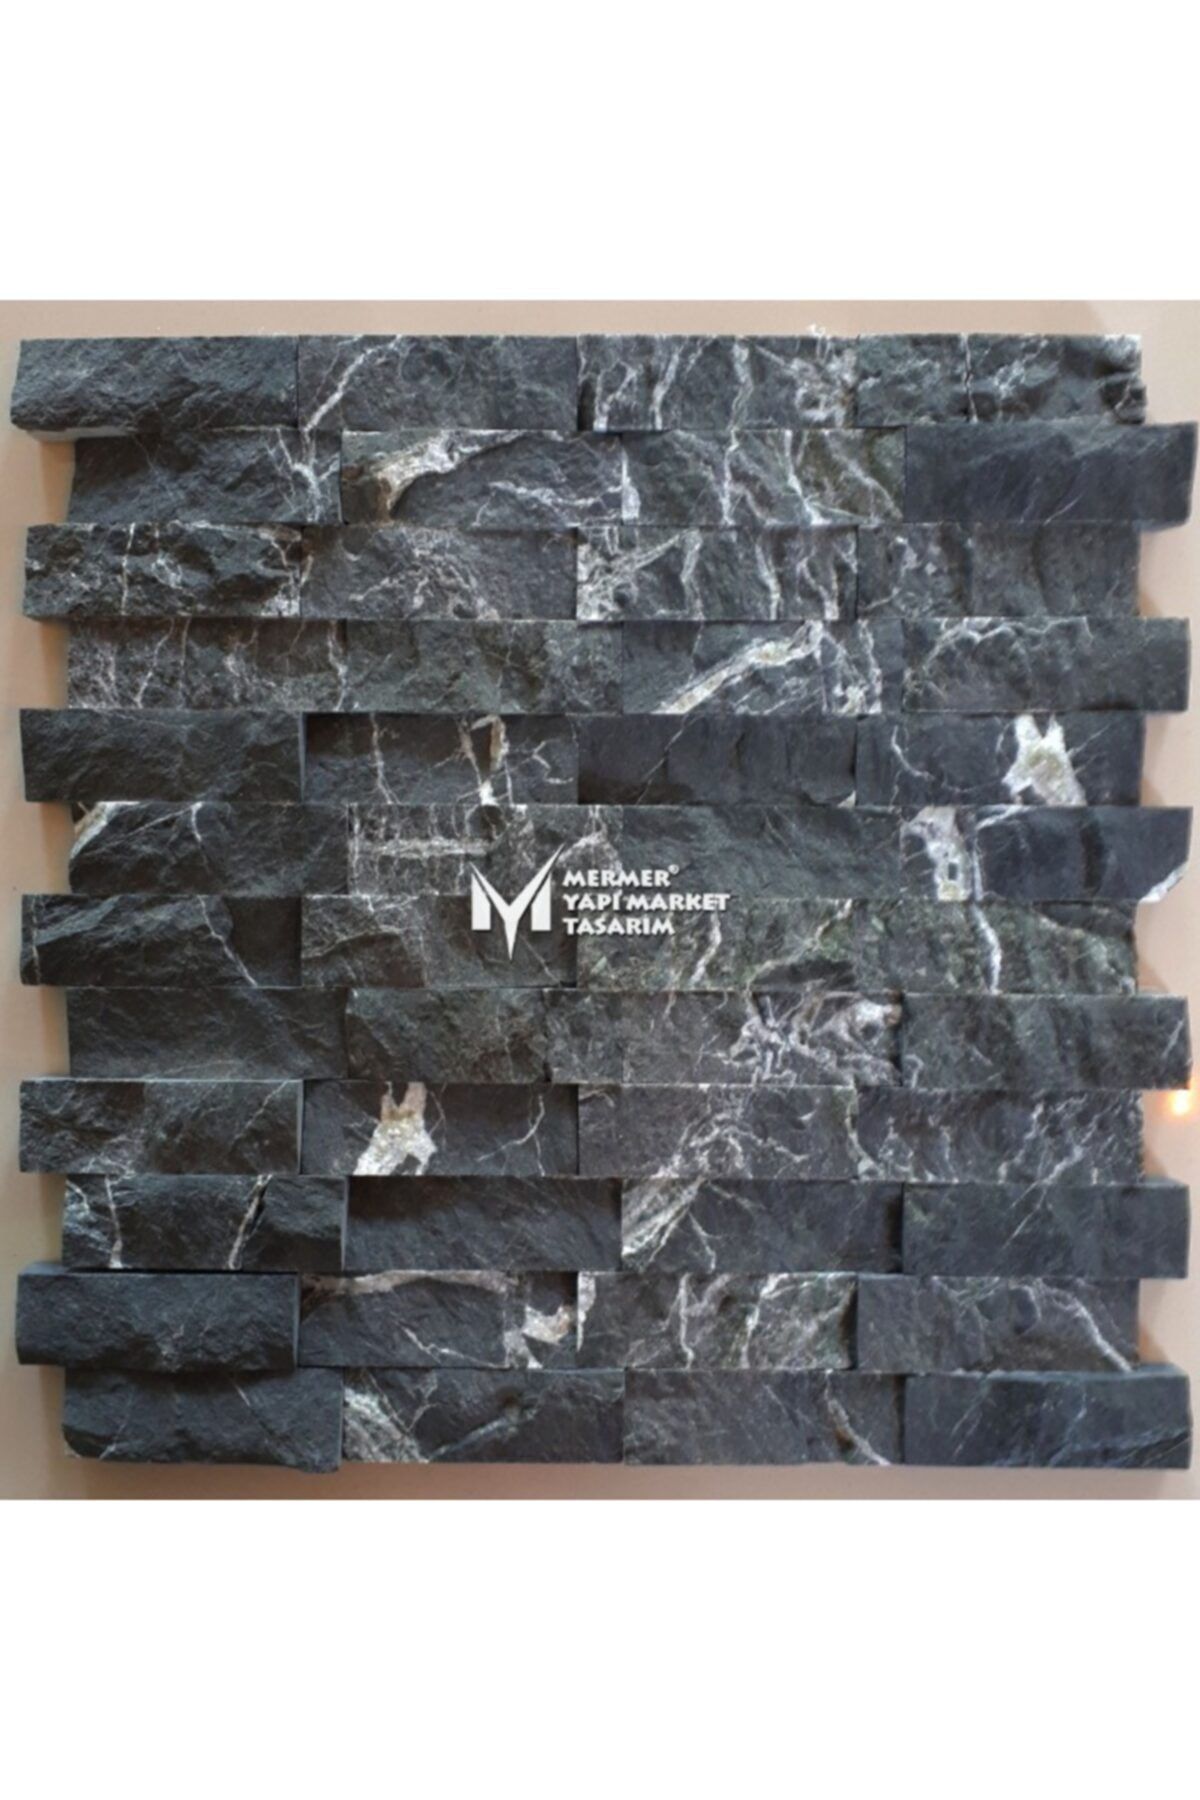 MYM Mermer Yapı Market Tasarım Petrol Siyahı Mermer Patlatma Mozaik